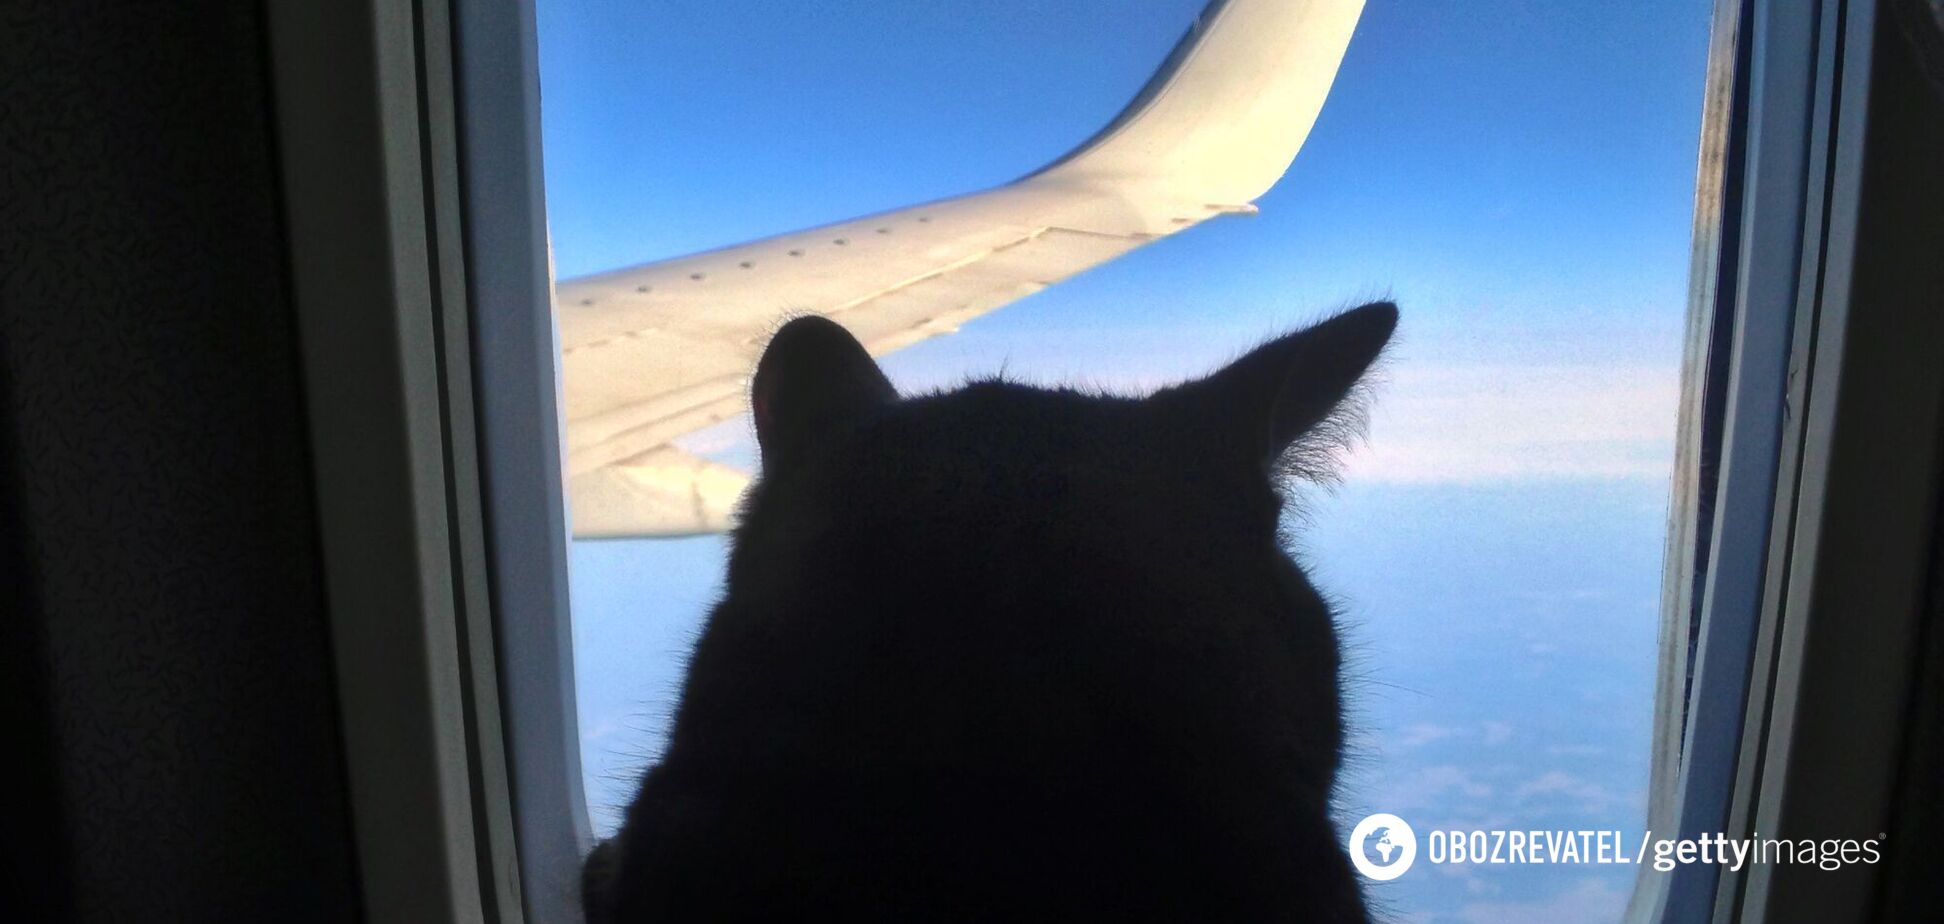 Видео с женщиной, кормящей грудью кота в самолете, наделало шума, но оказалось постановкой